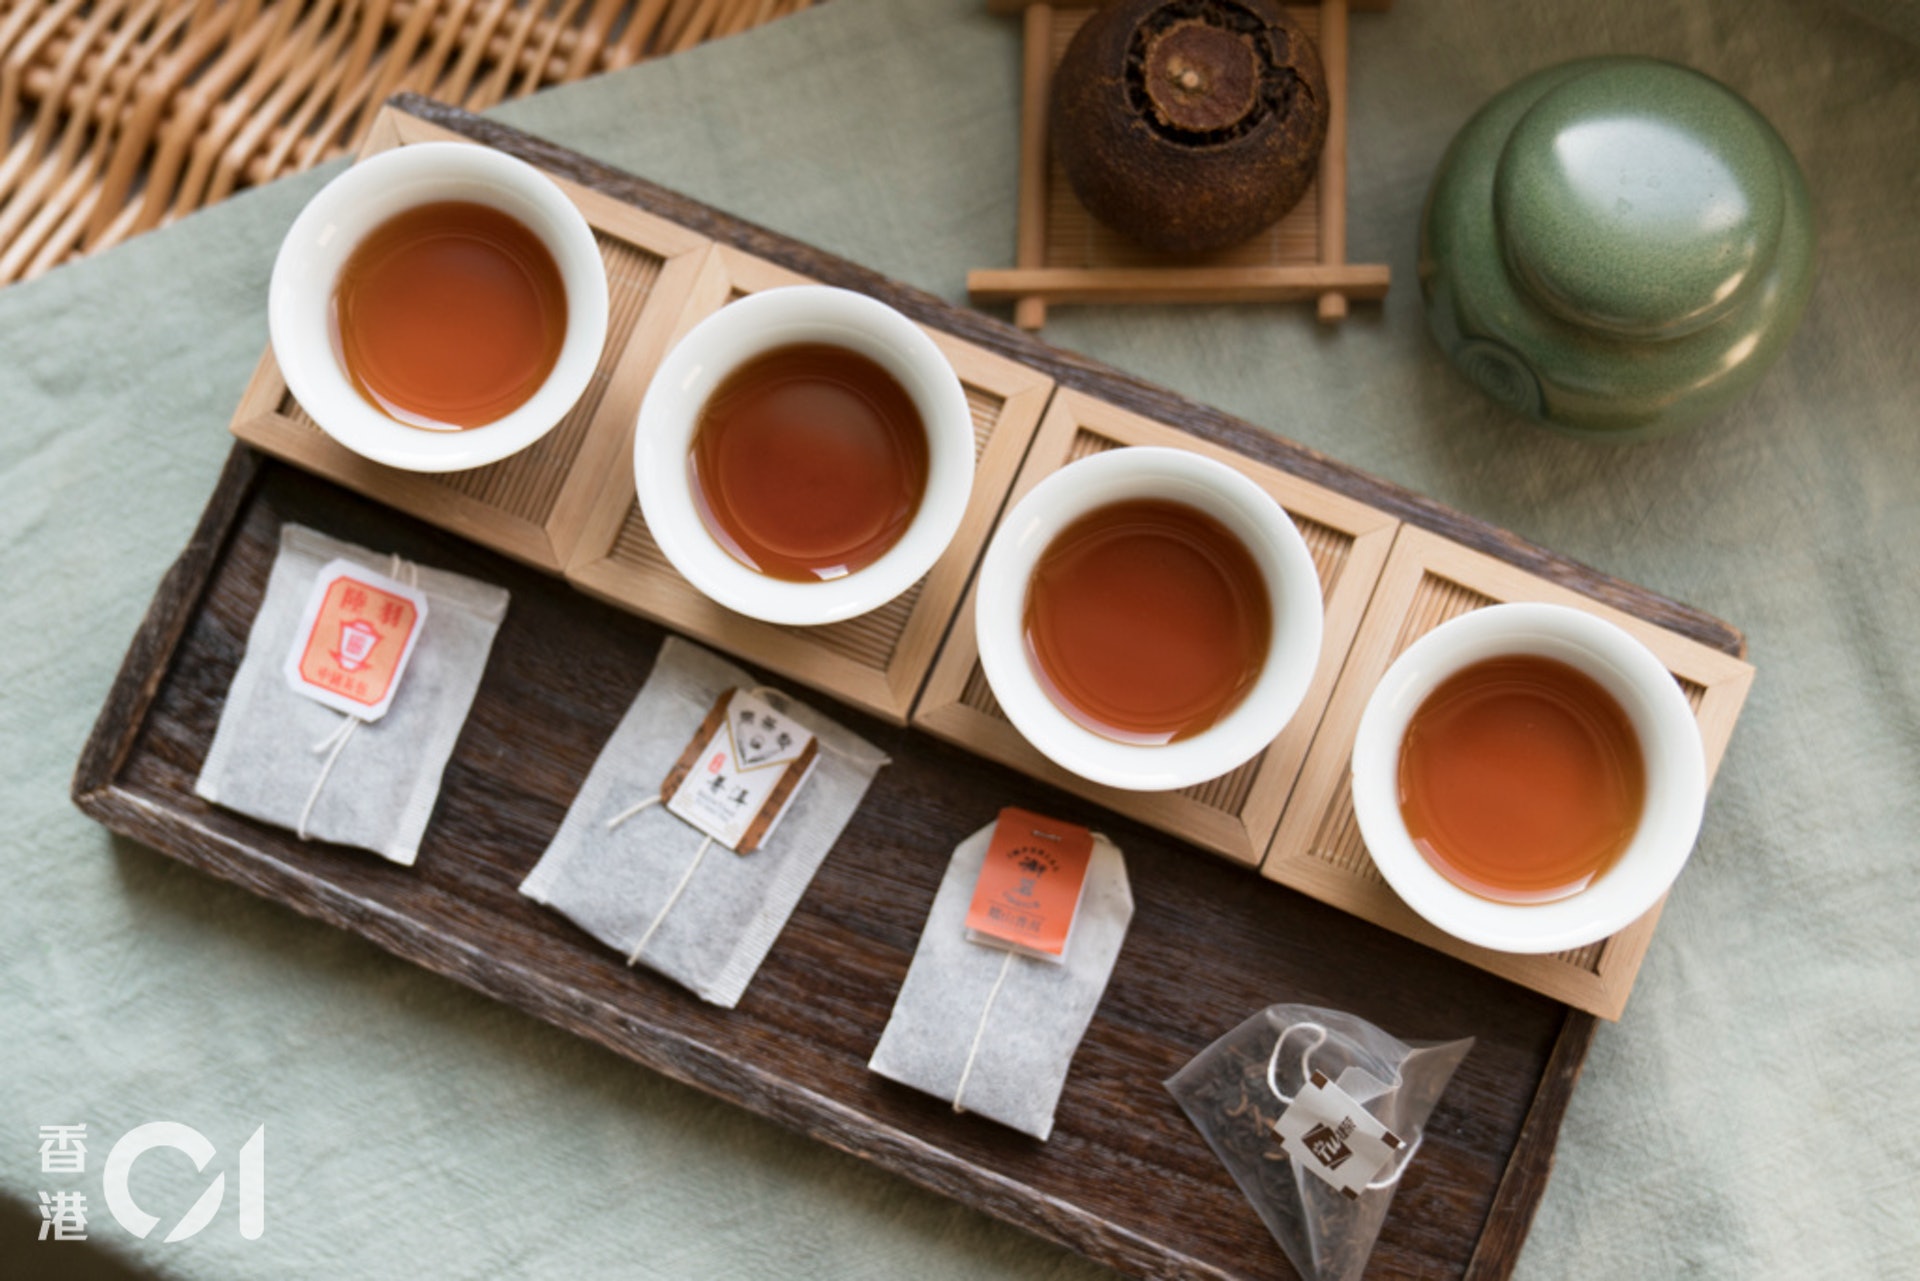 早前比較了市面4款普洱茶包，（由左至右）包括陸羽、樂茶聚、御茗及捷榮，當中樂茶聚各樣得分最高，不過近年已下架，絕跡市面，原因不詳。